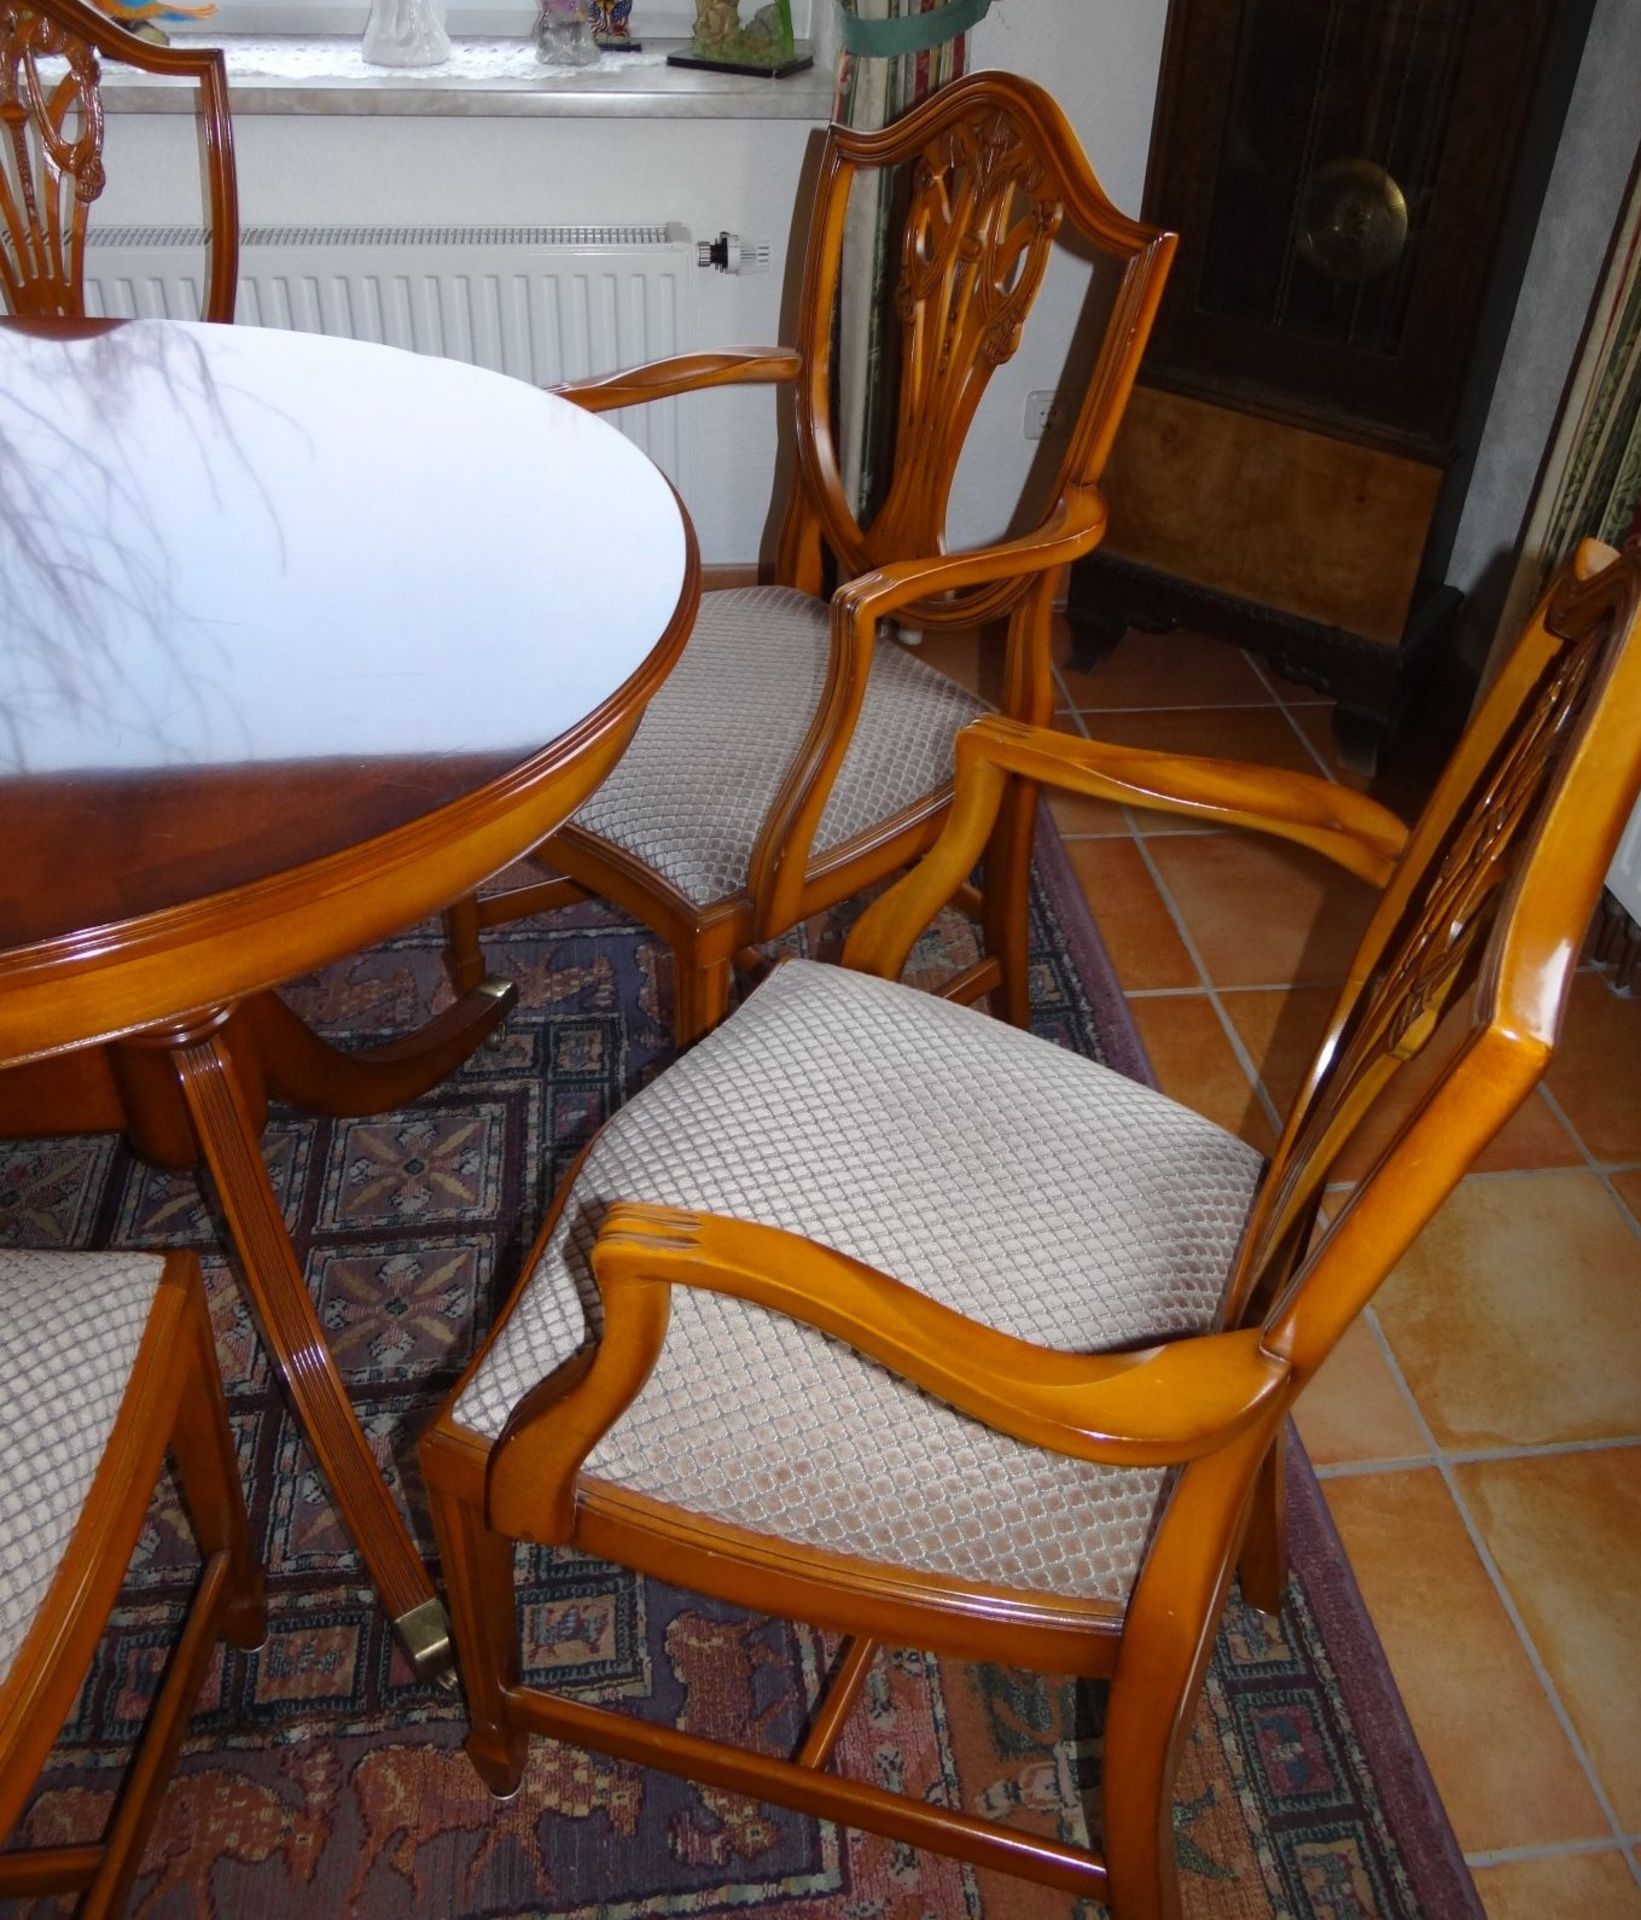 Esstisch mit 7 Stühlen im Sheraton-Stil, Kirsche, 3 Armlehnstühle, 4 Stühle, Tisch ausziehbar, - Bild 2 aus 8